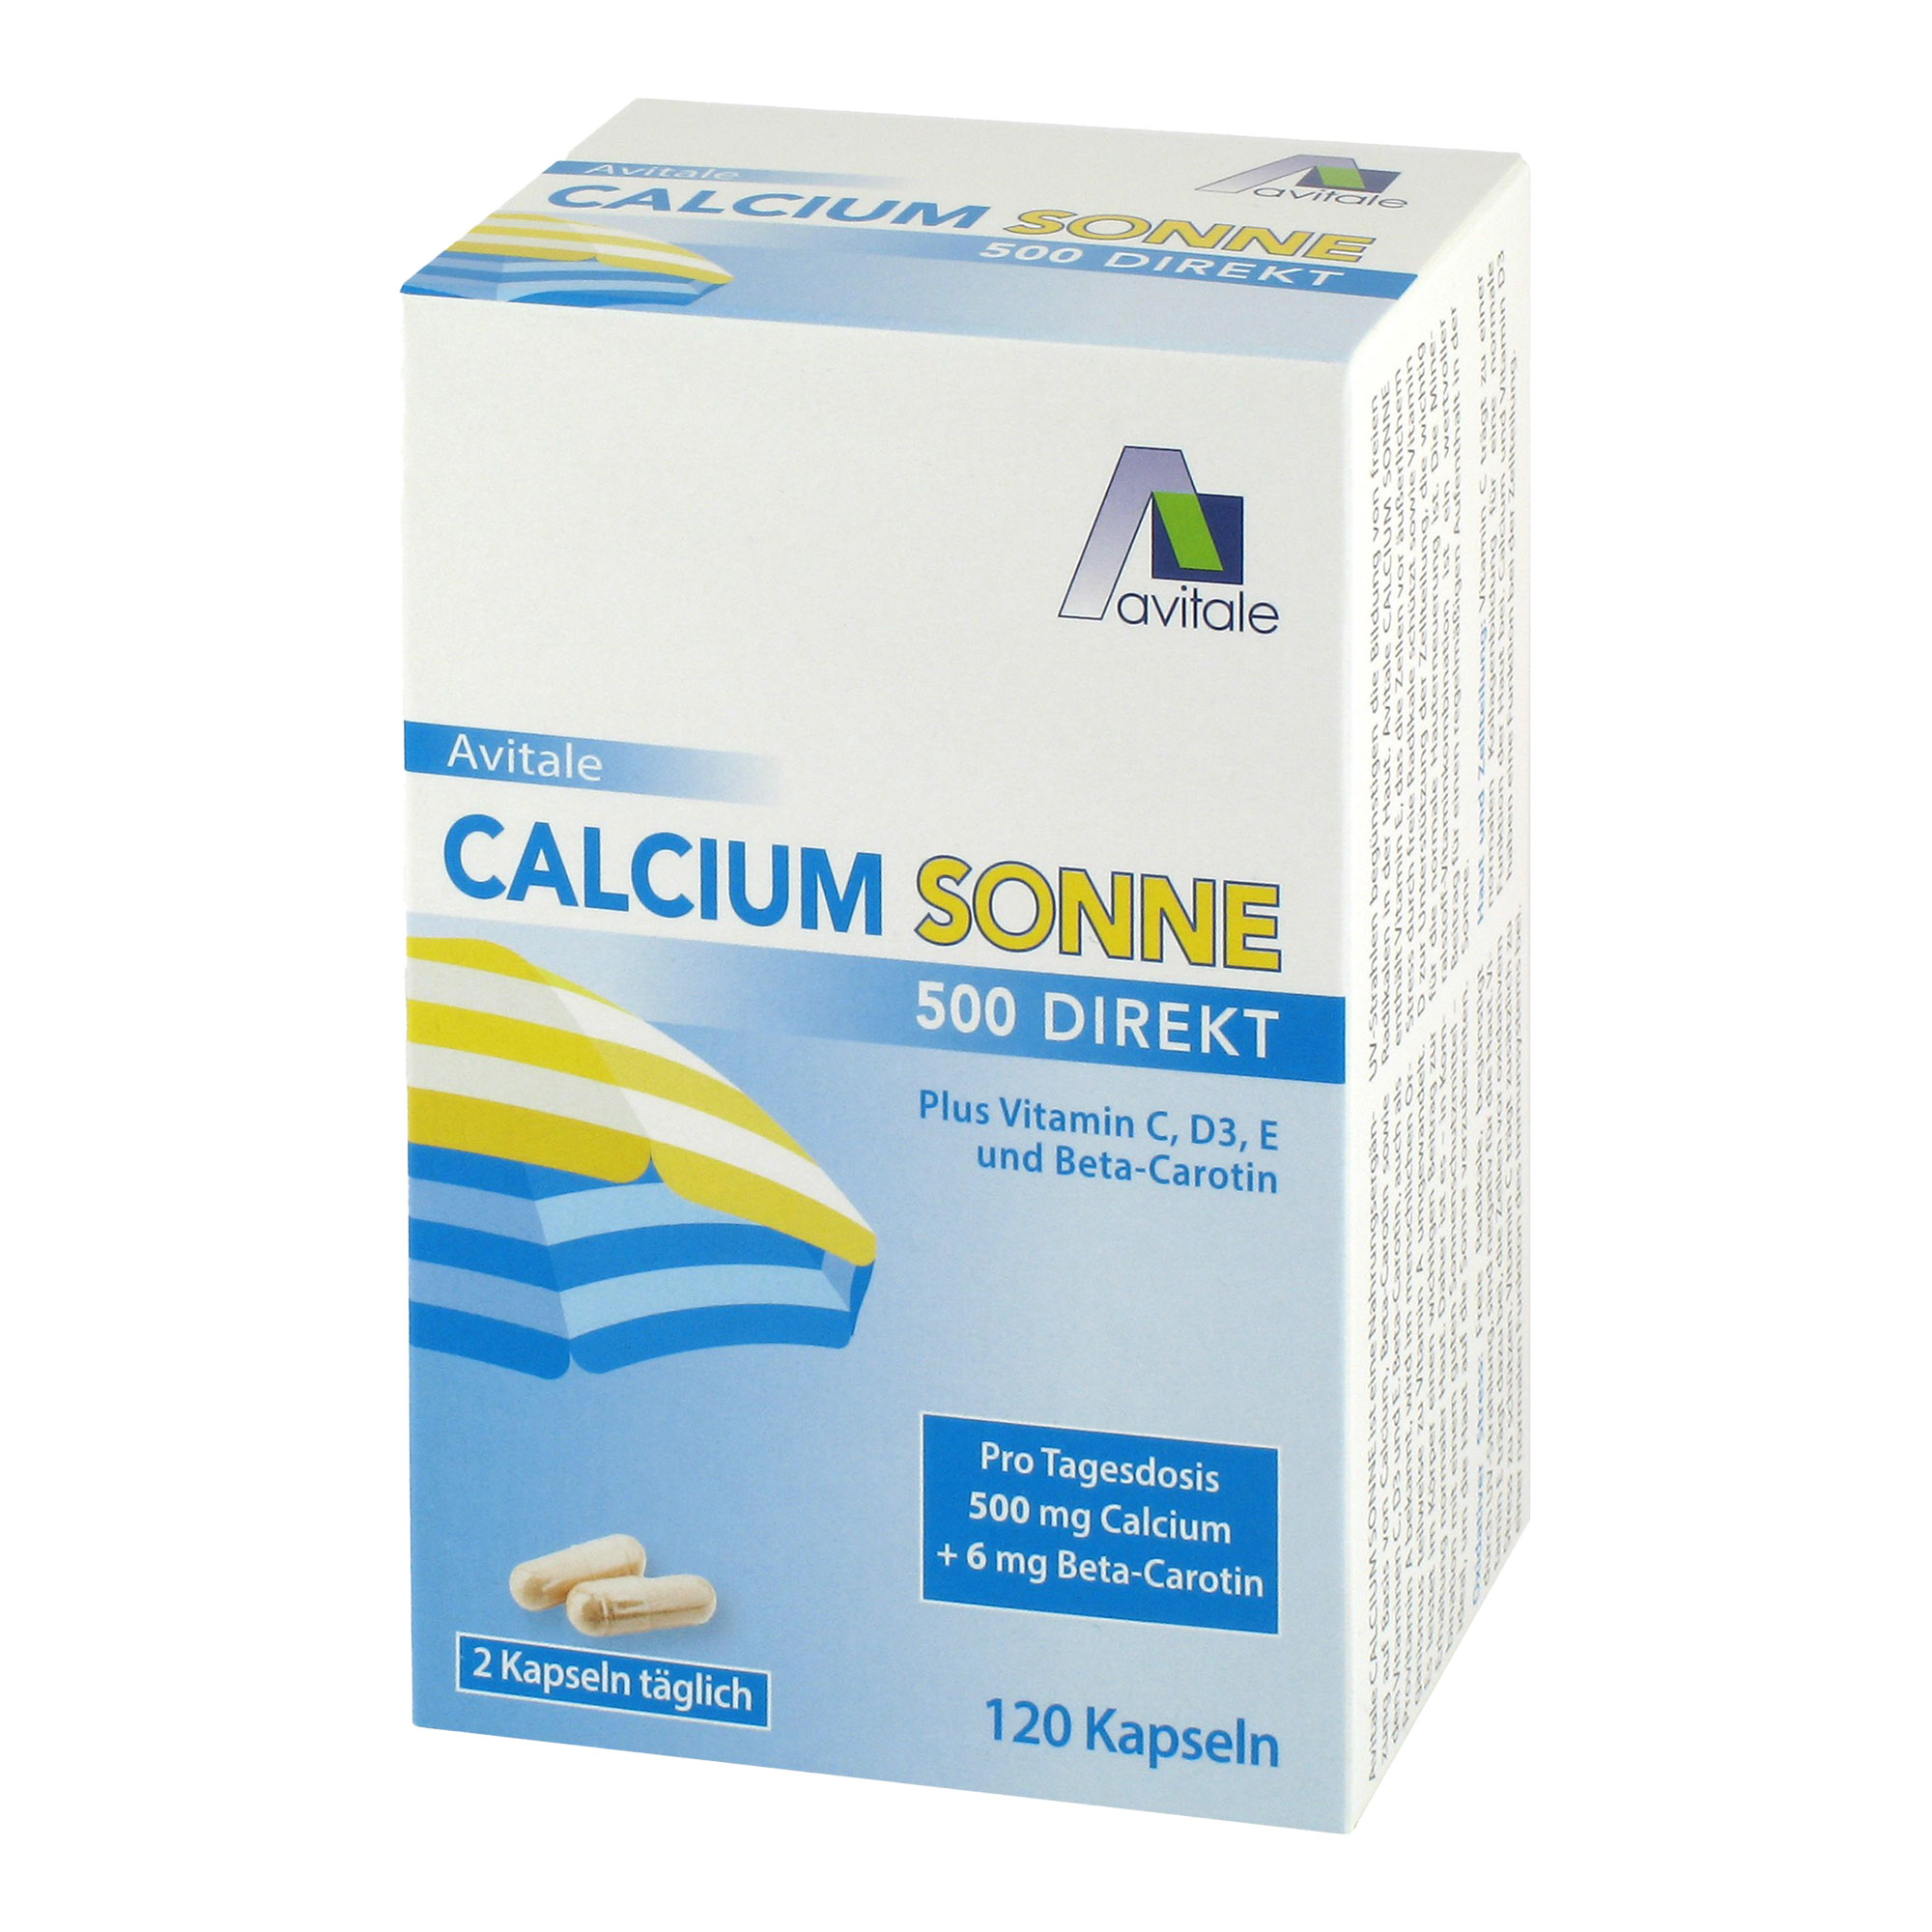 Nahrungsergänzungsmittel mit Calcium plus Vitamin C, D3, E und Beta-Carotin.